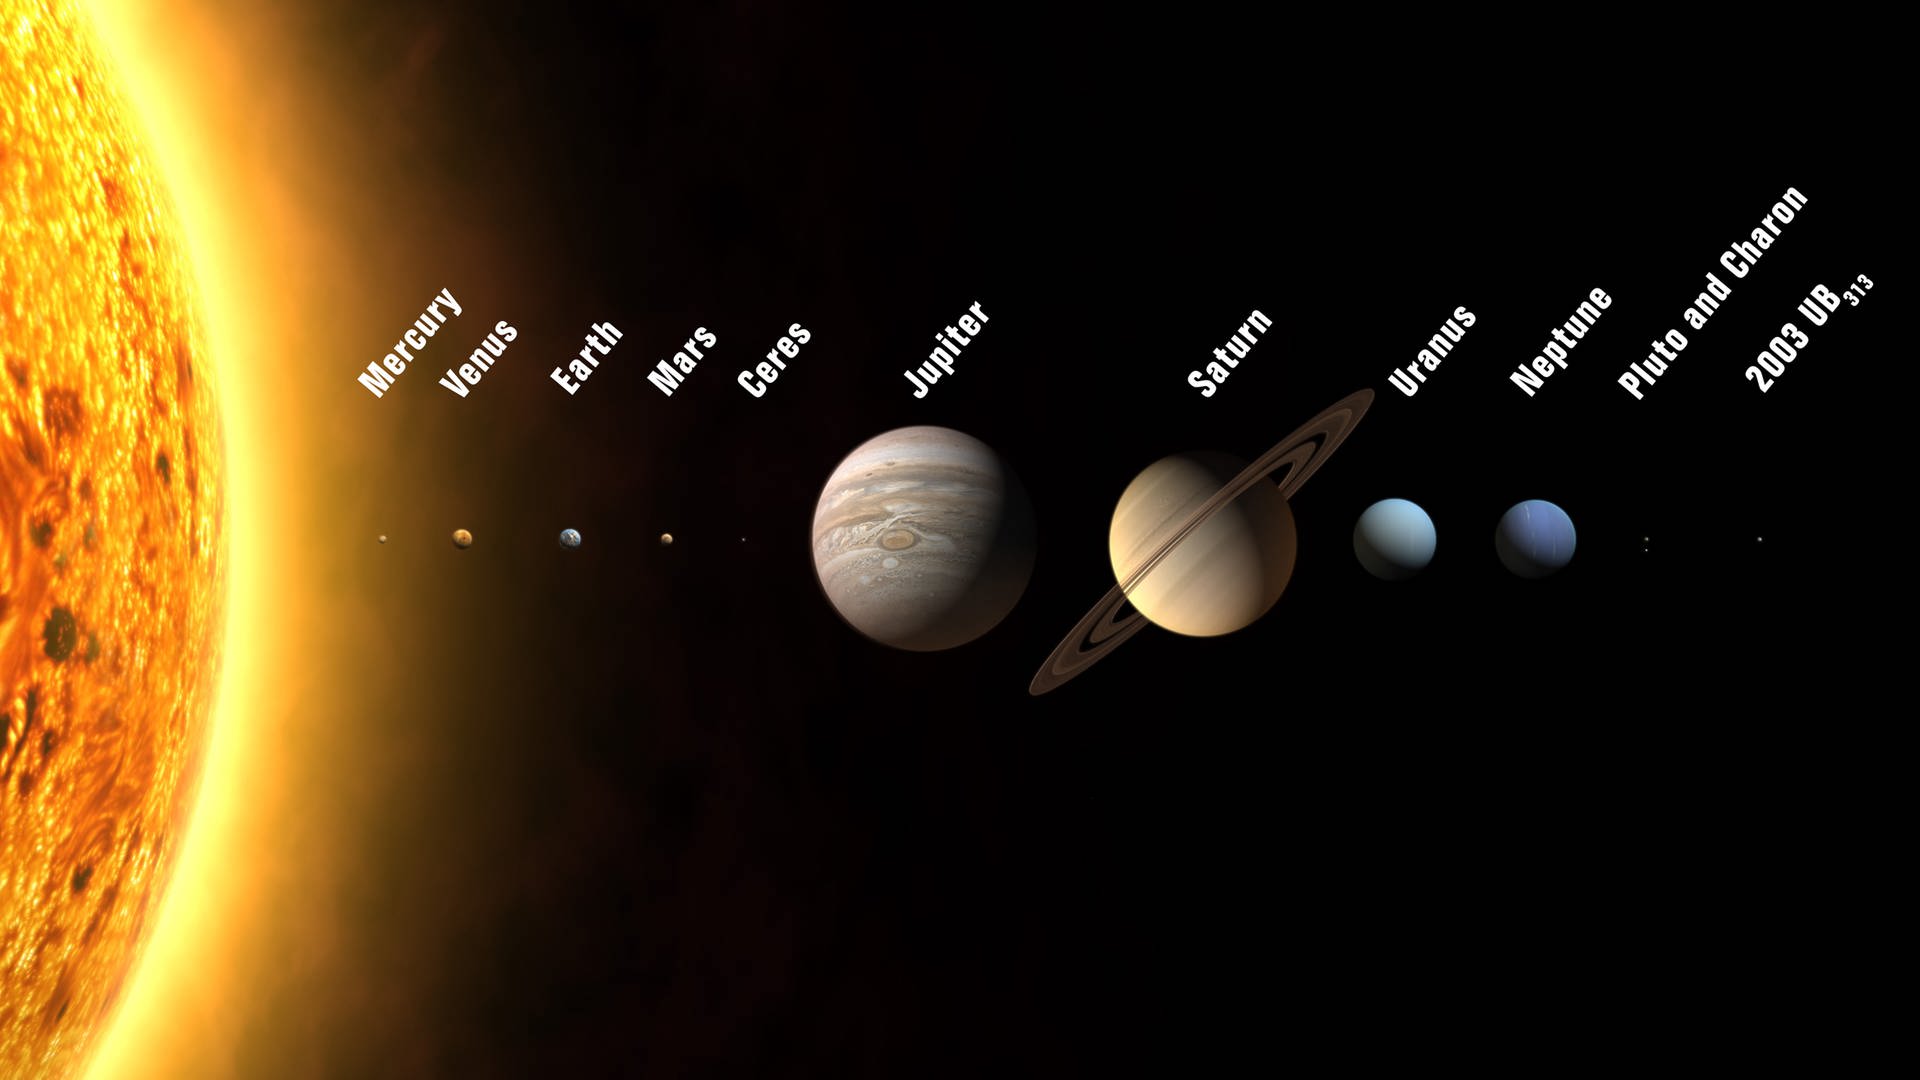 Die Illustration zeigt die 2006 neu definierten Planeten und Zwergplaneten des Sonnensystems